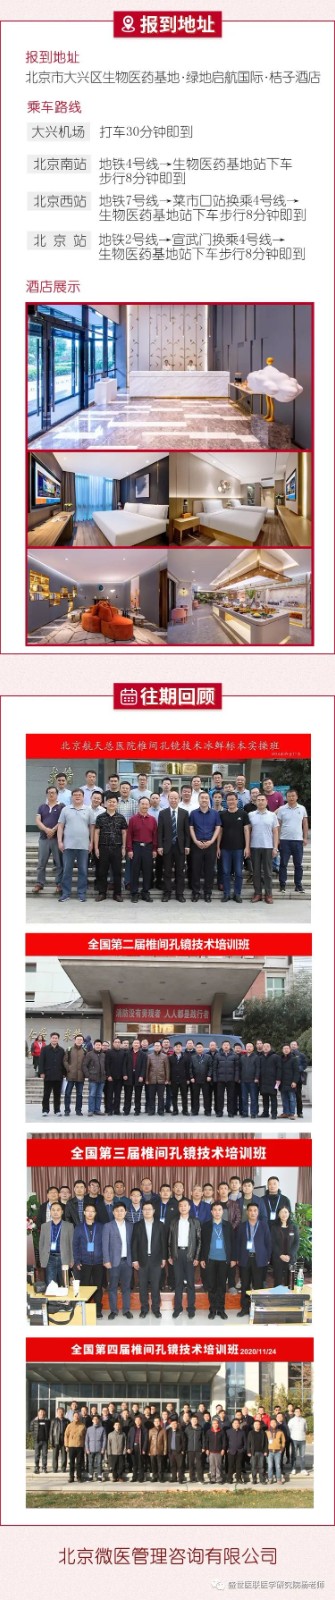 北京4月14日全国第五届椎间孔镜技术培训班